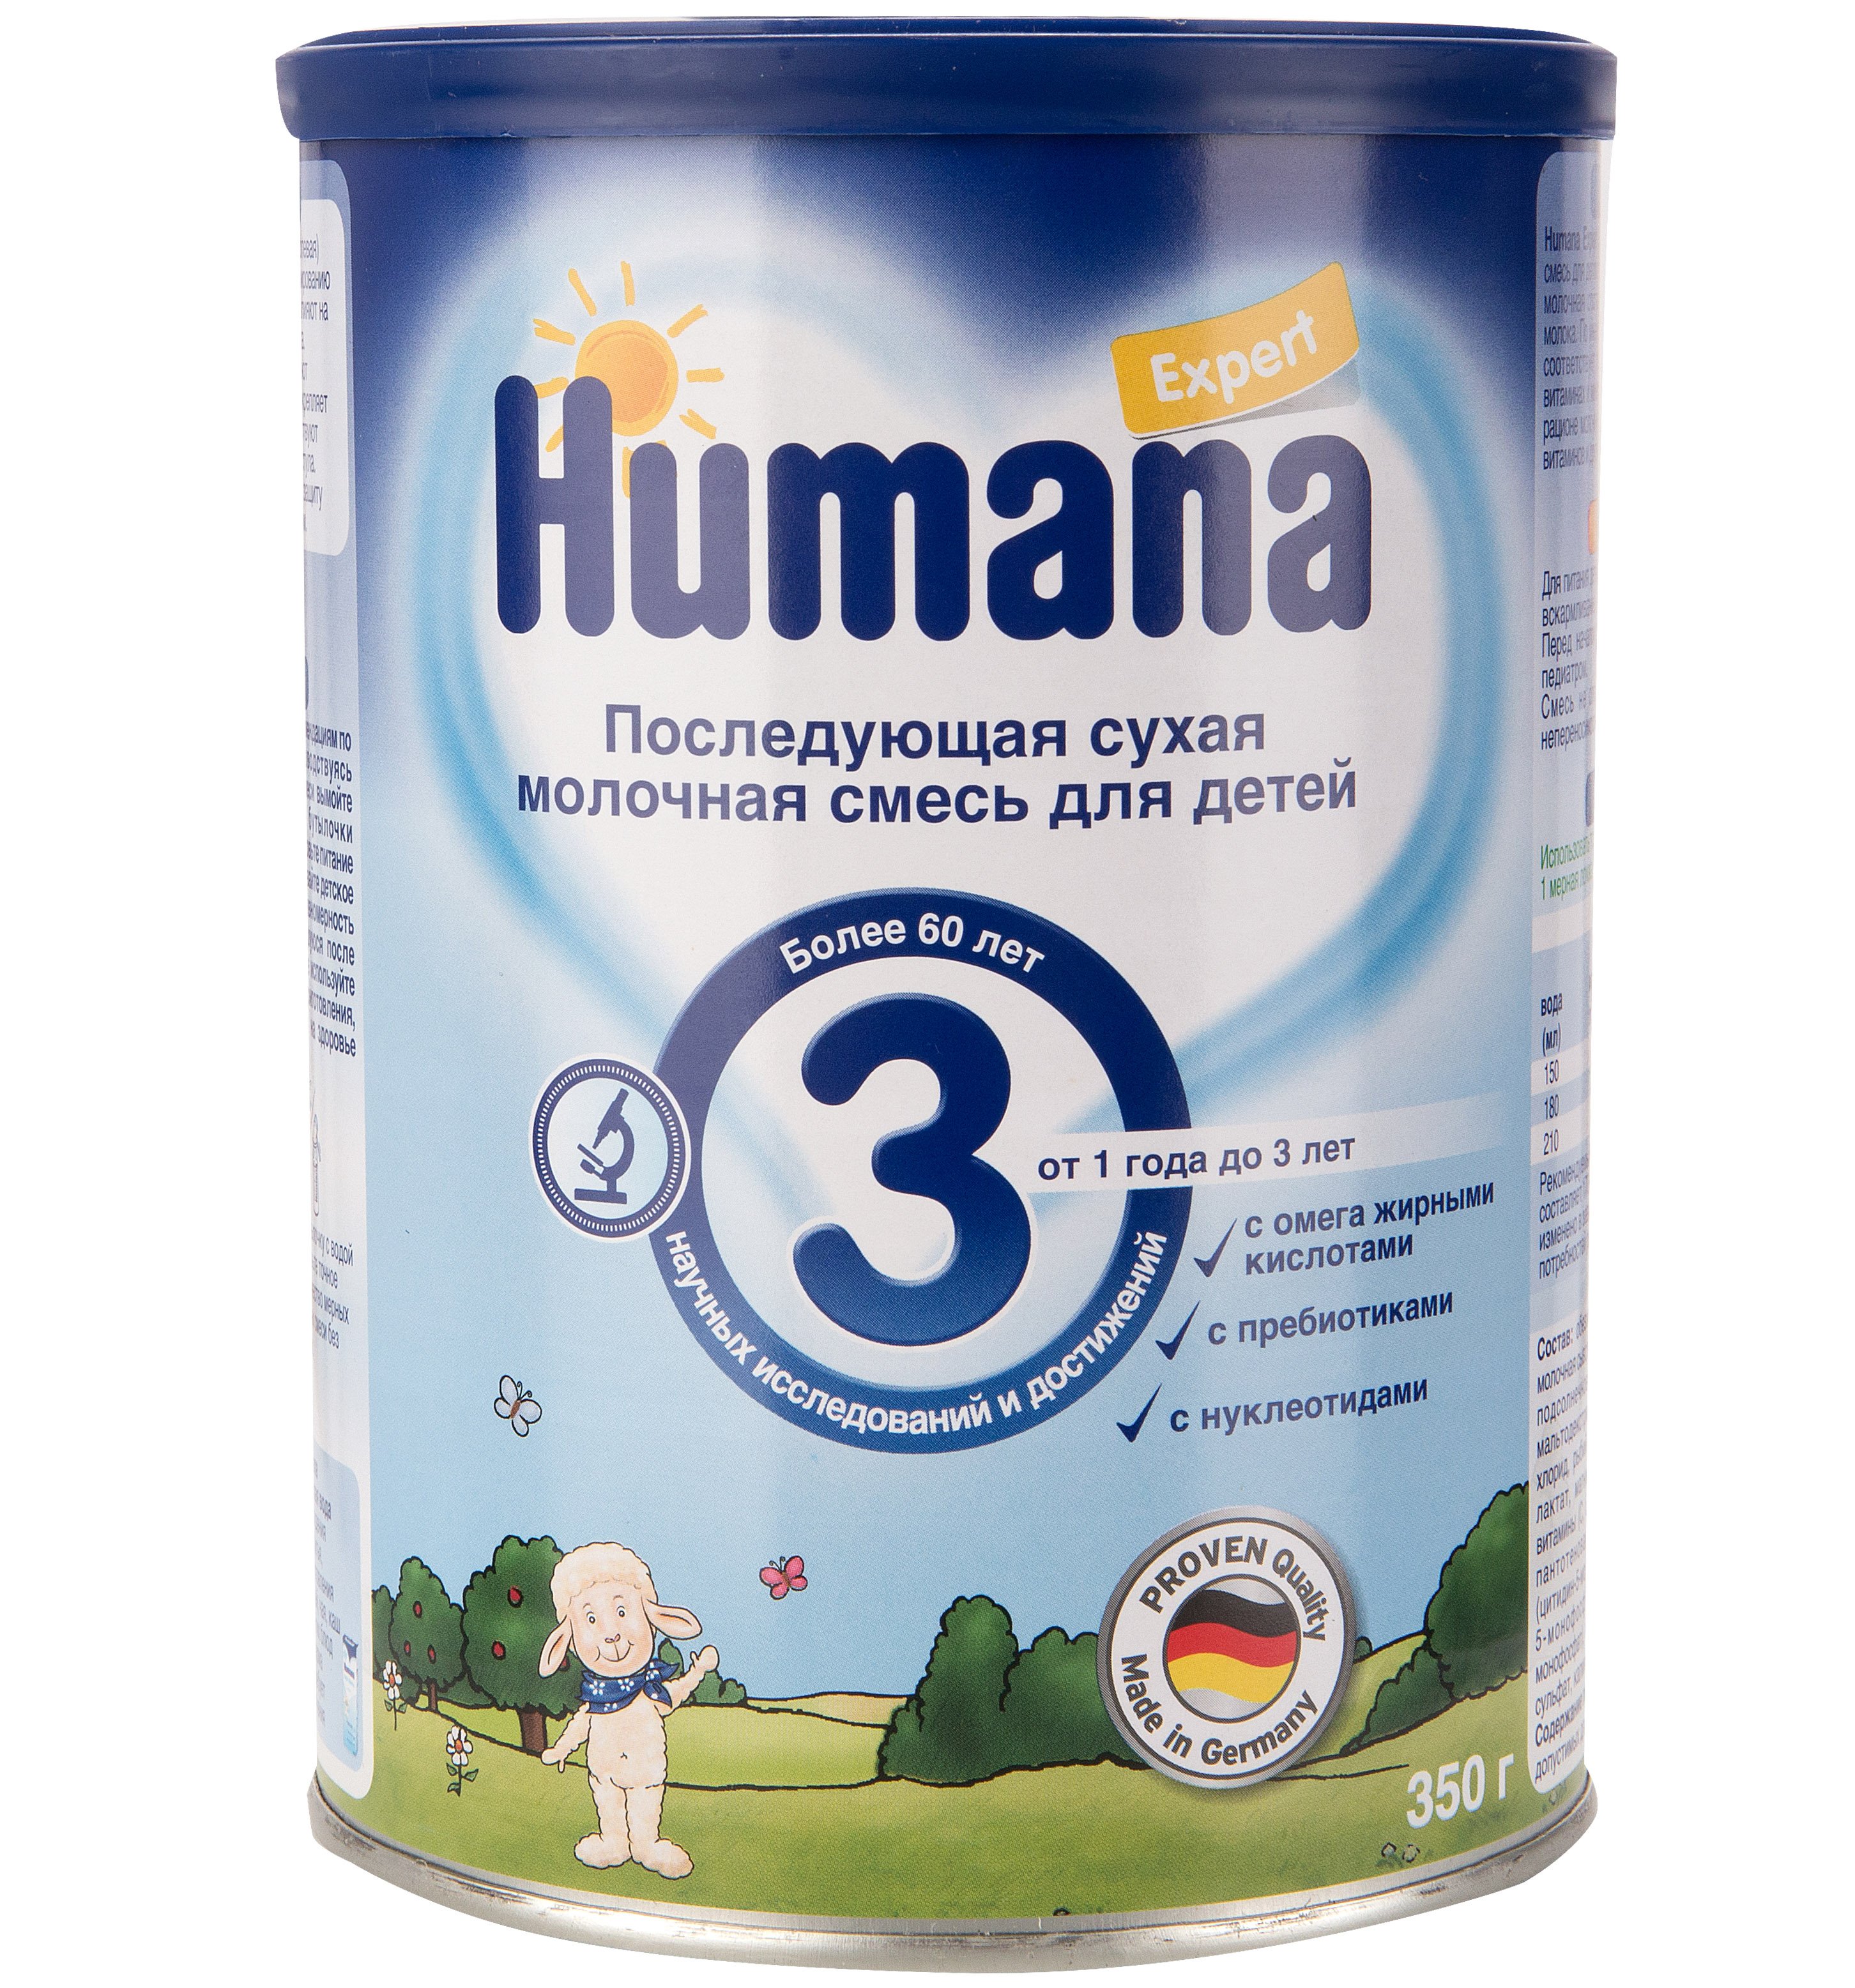 Купить смеси новосибирск. Хумана лечебная смесь humana. Хумана 2 смесь. Смесь humana Expert 3 (от 1 года до 3 лет) 350 г. Детское питание смесь смесь Хумана 1.